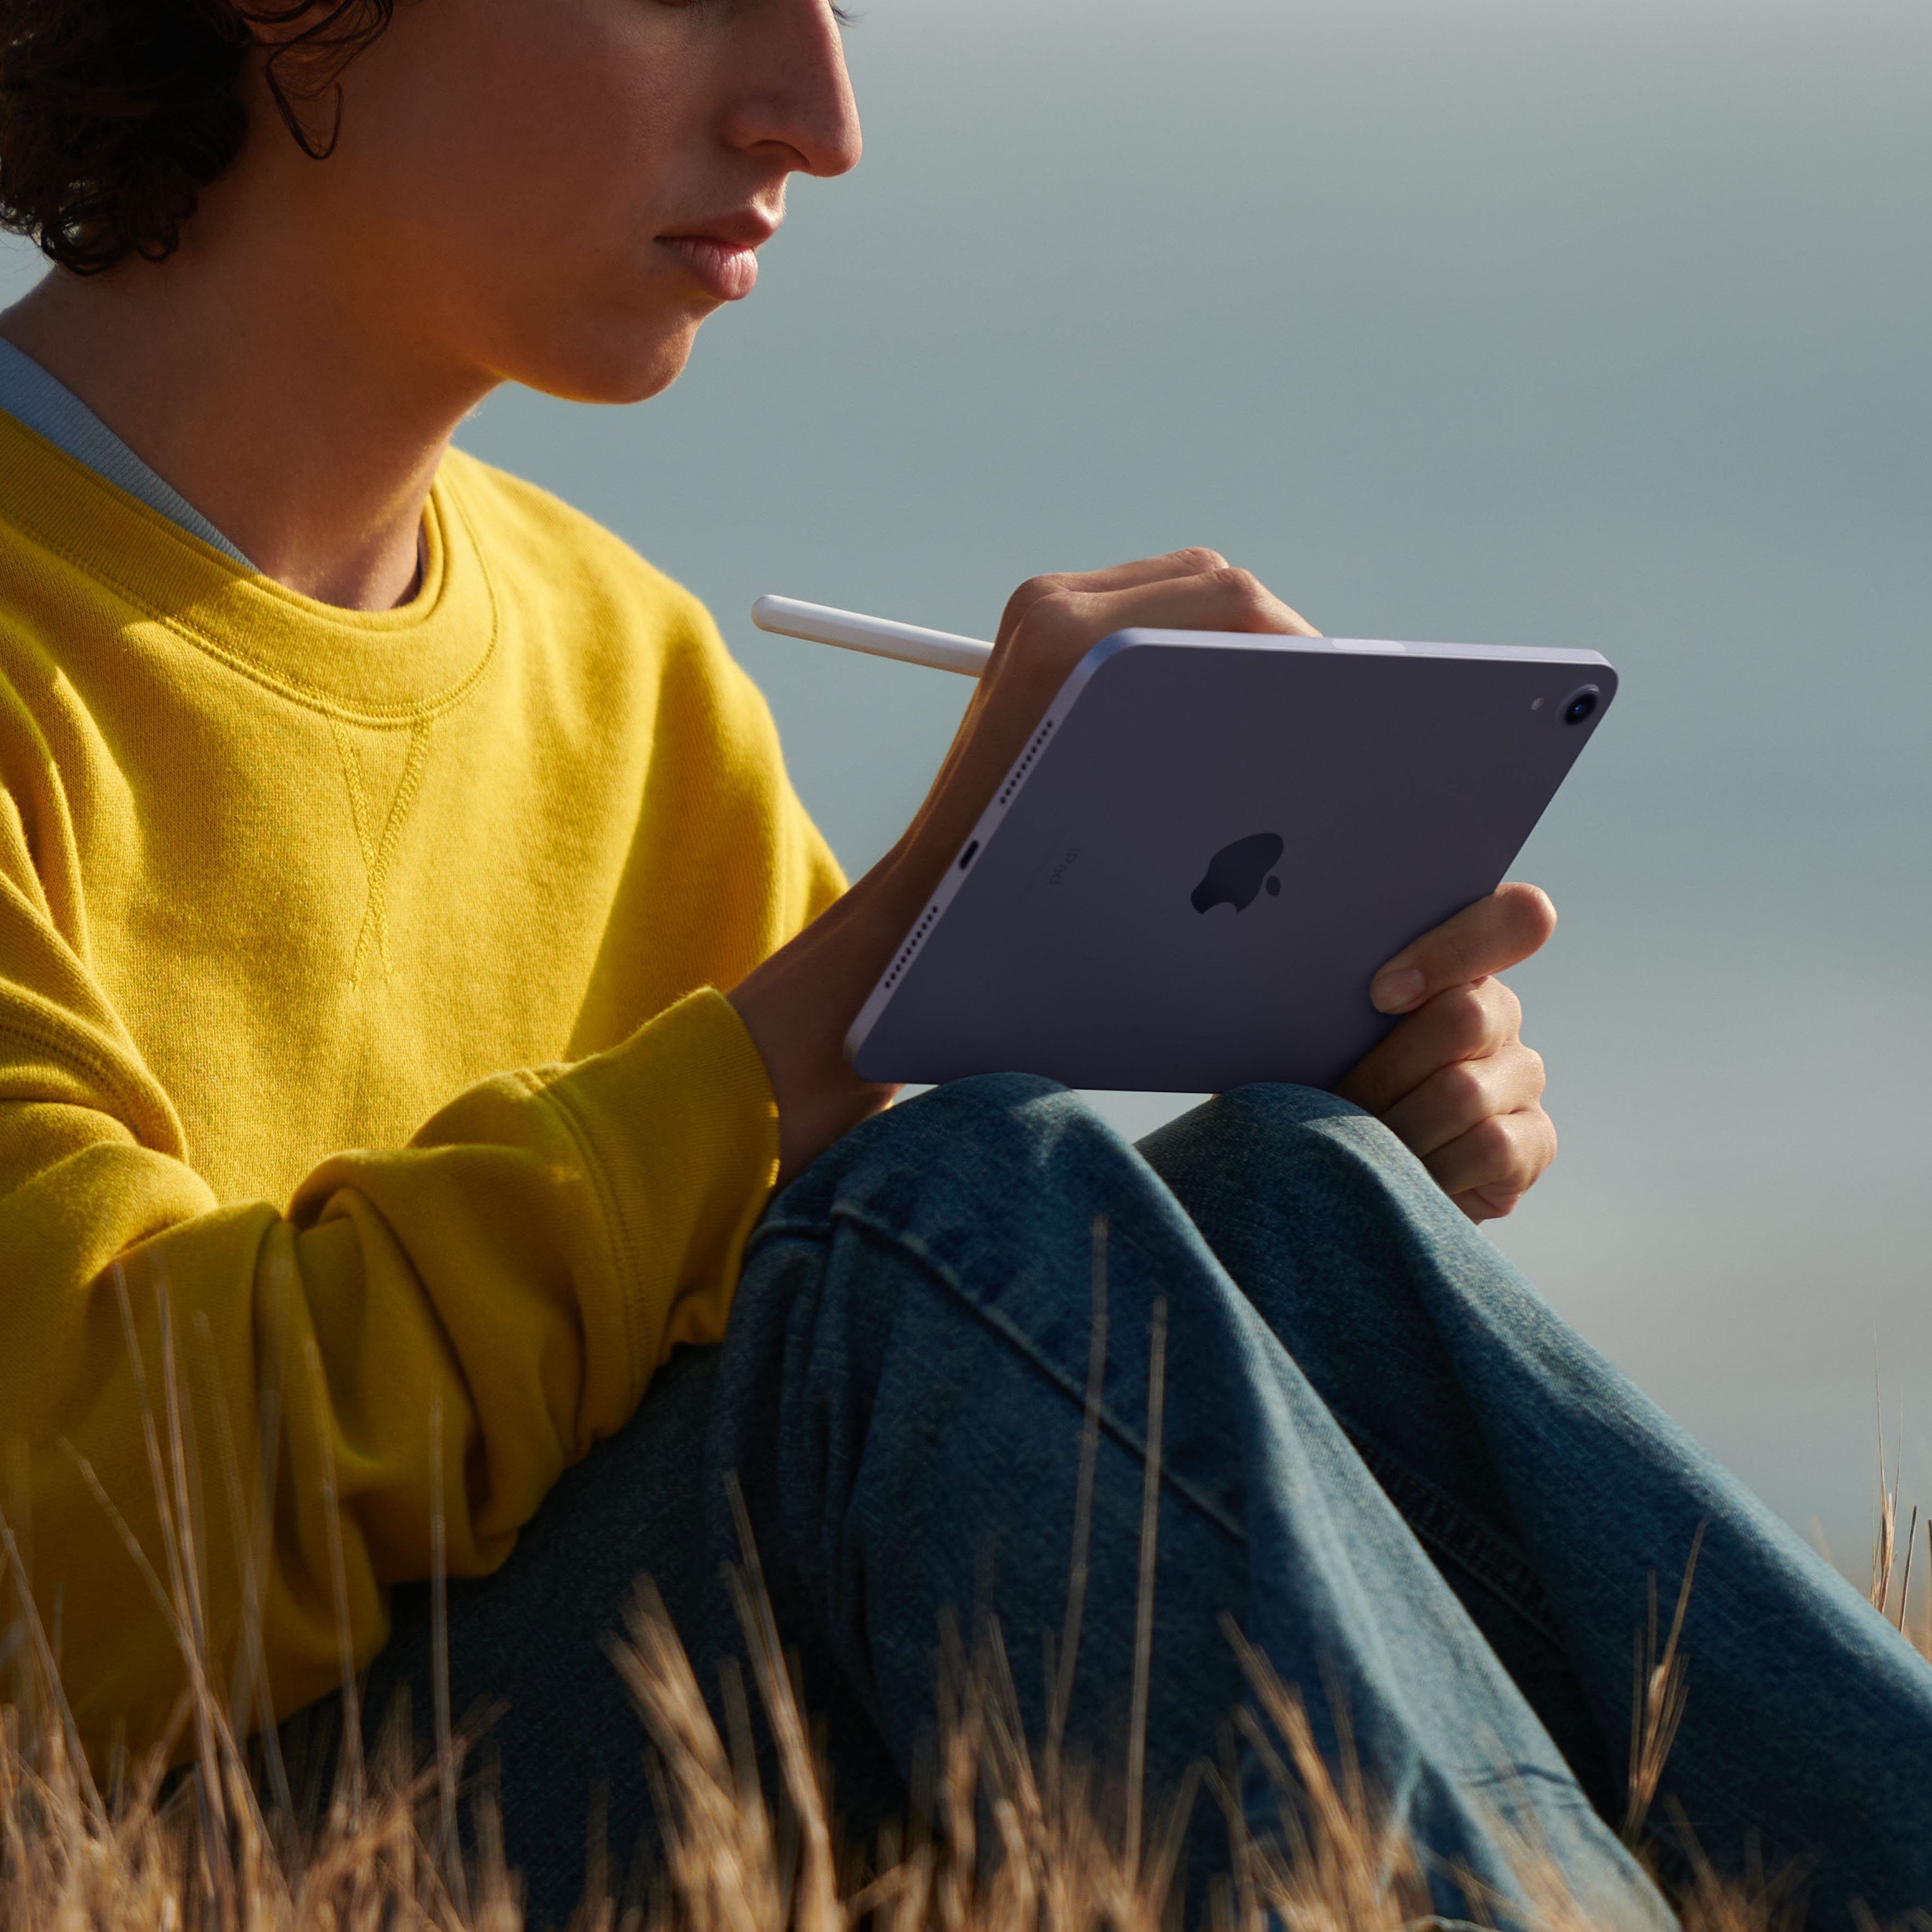 Tablet GB, Apple mini iPadOS) iPad (8,3", (2021) Purple Wi-Fi 64